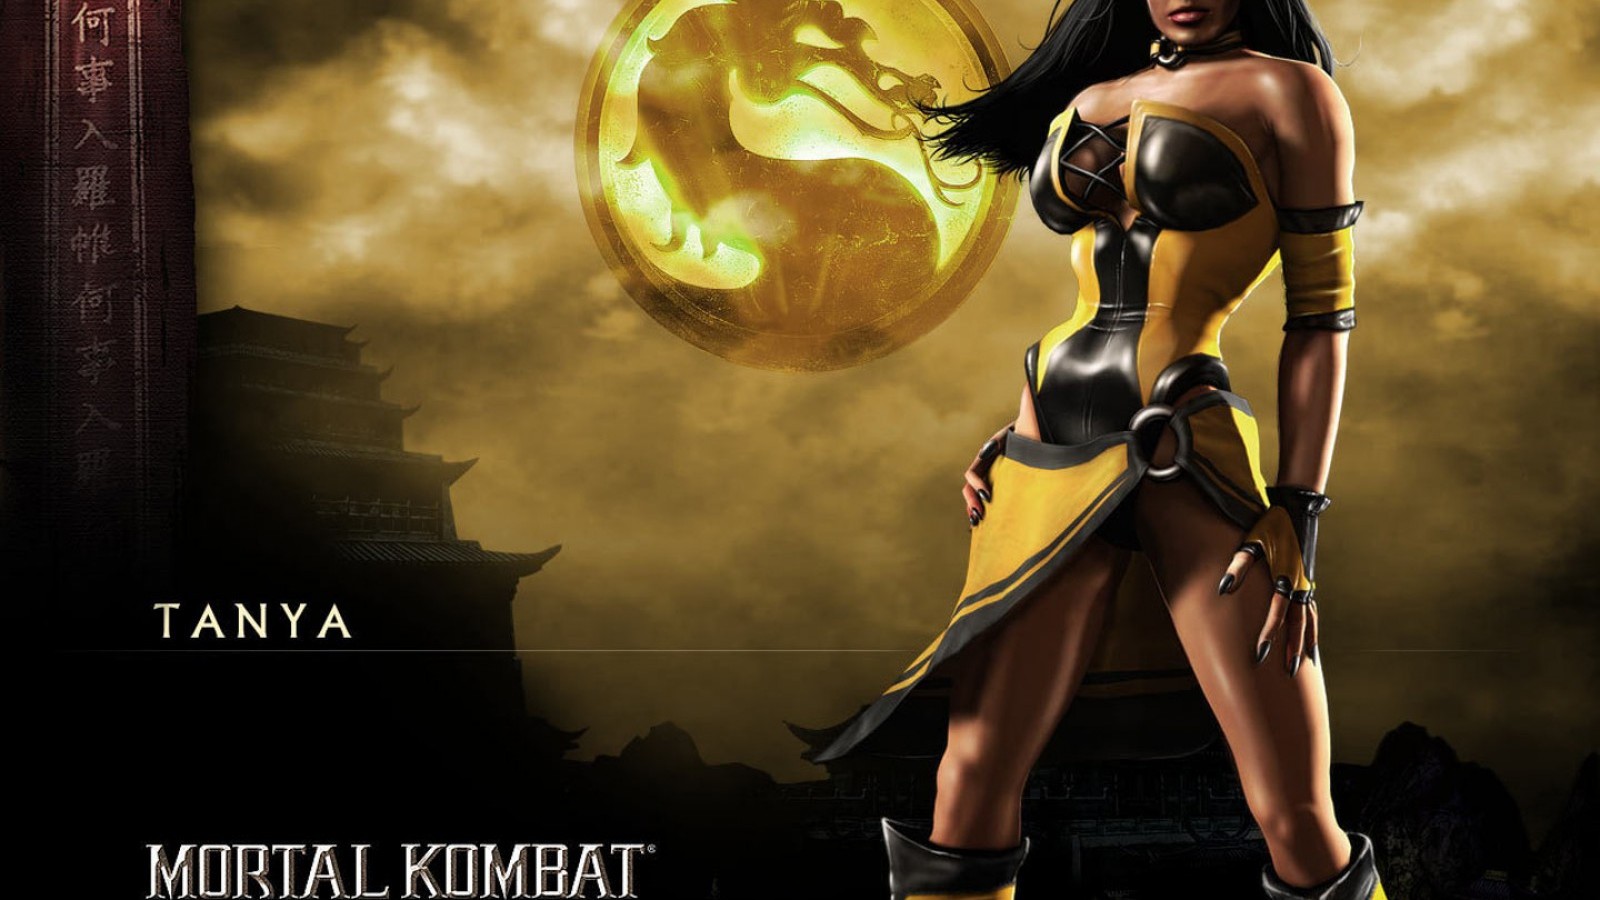 Tanya Mortal Kombat Wallpaper